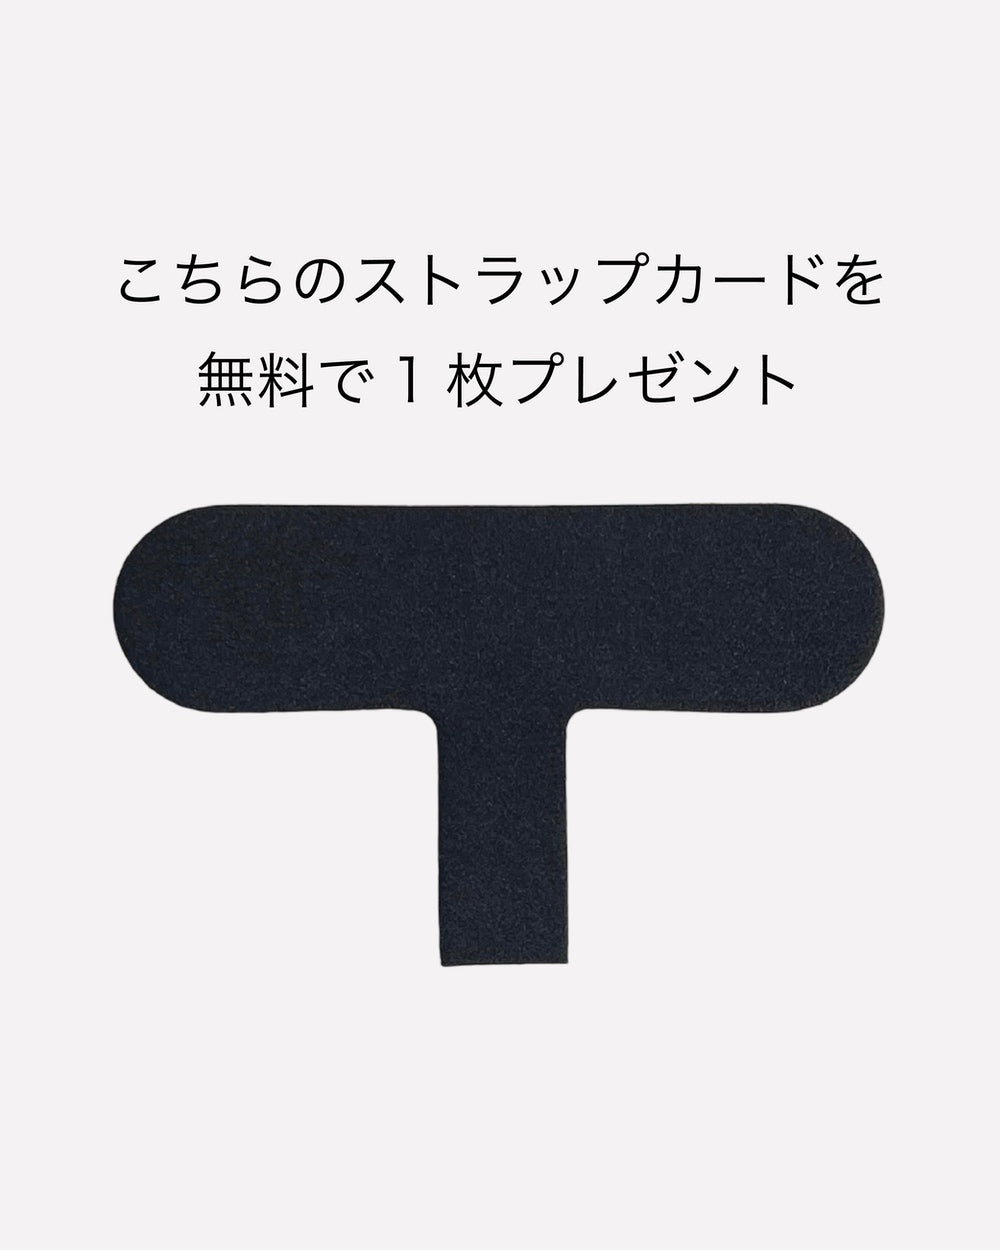 【セット商品】バンパーハードケース / R1001 / カーキ × ショルダーストラップ / ブラウン / R1785